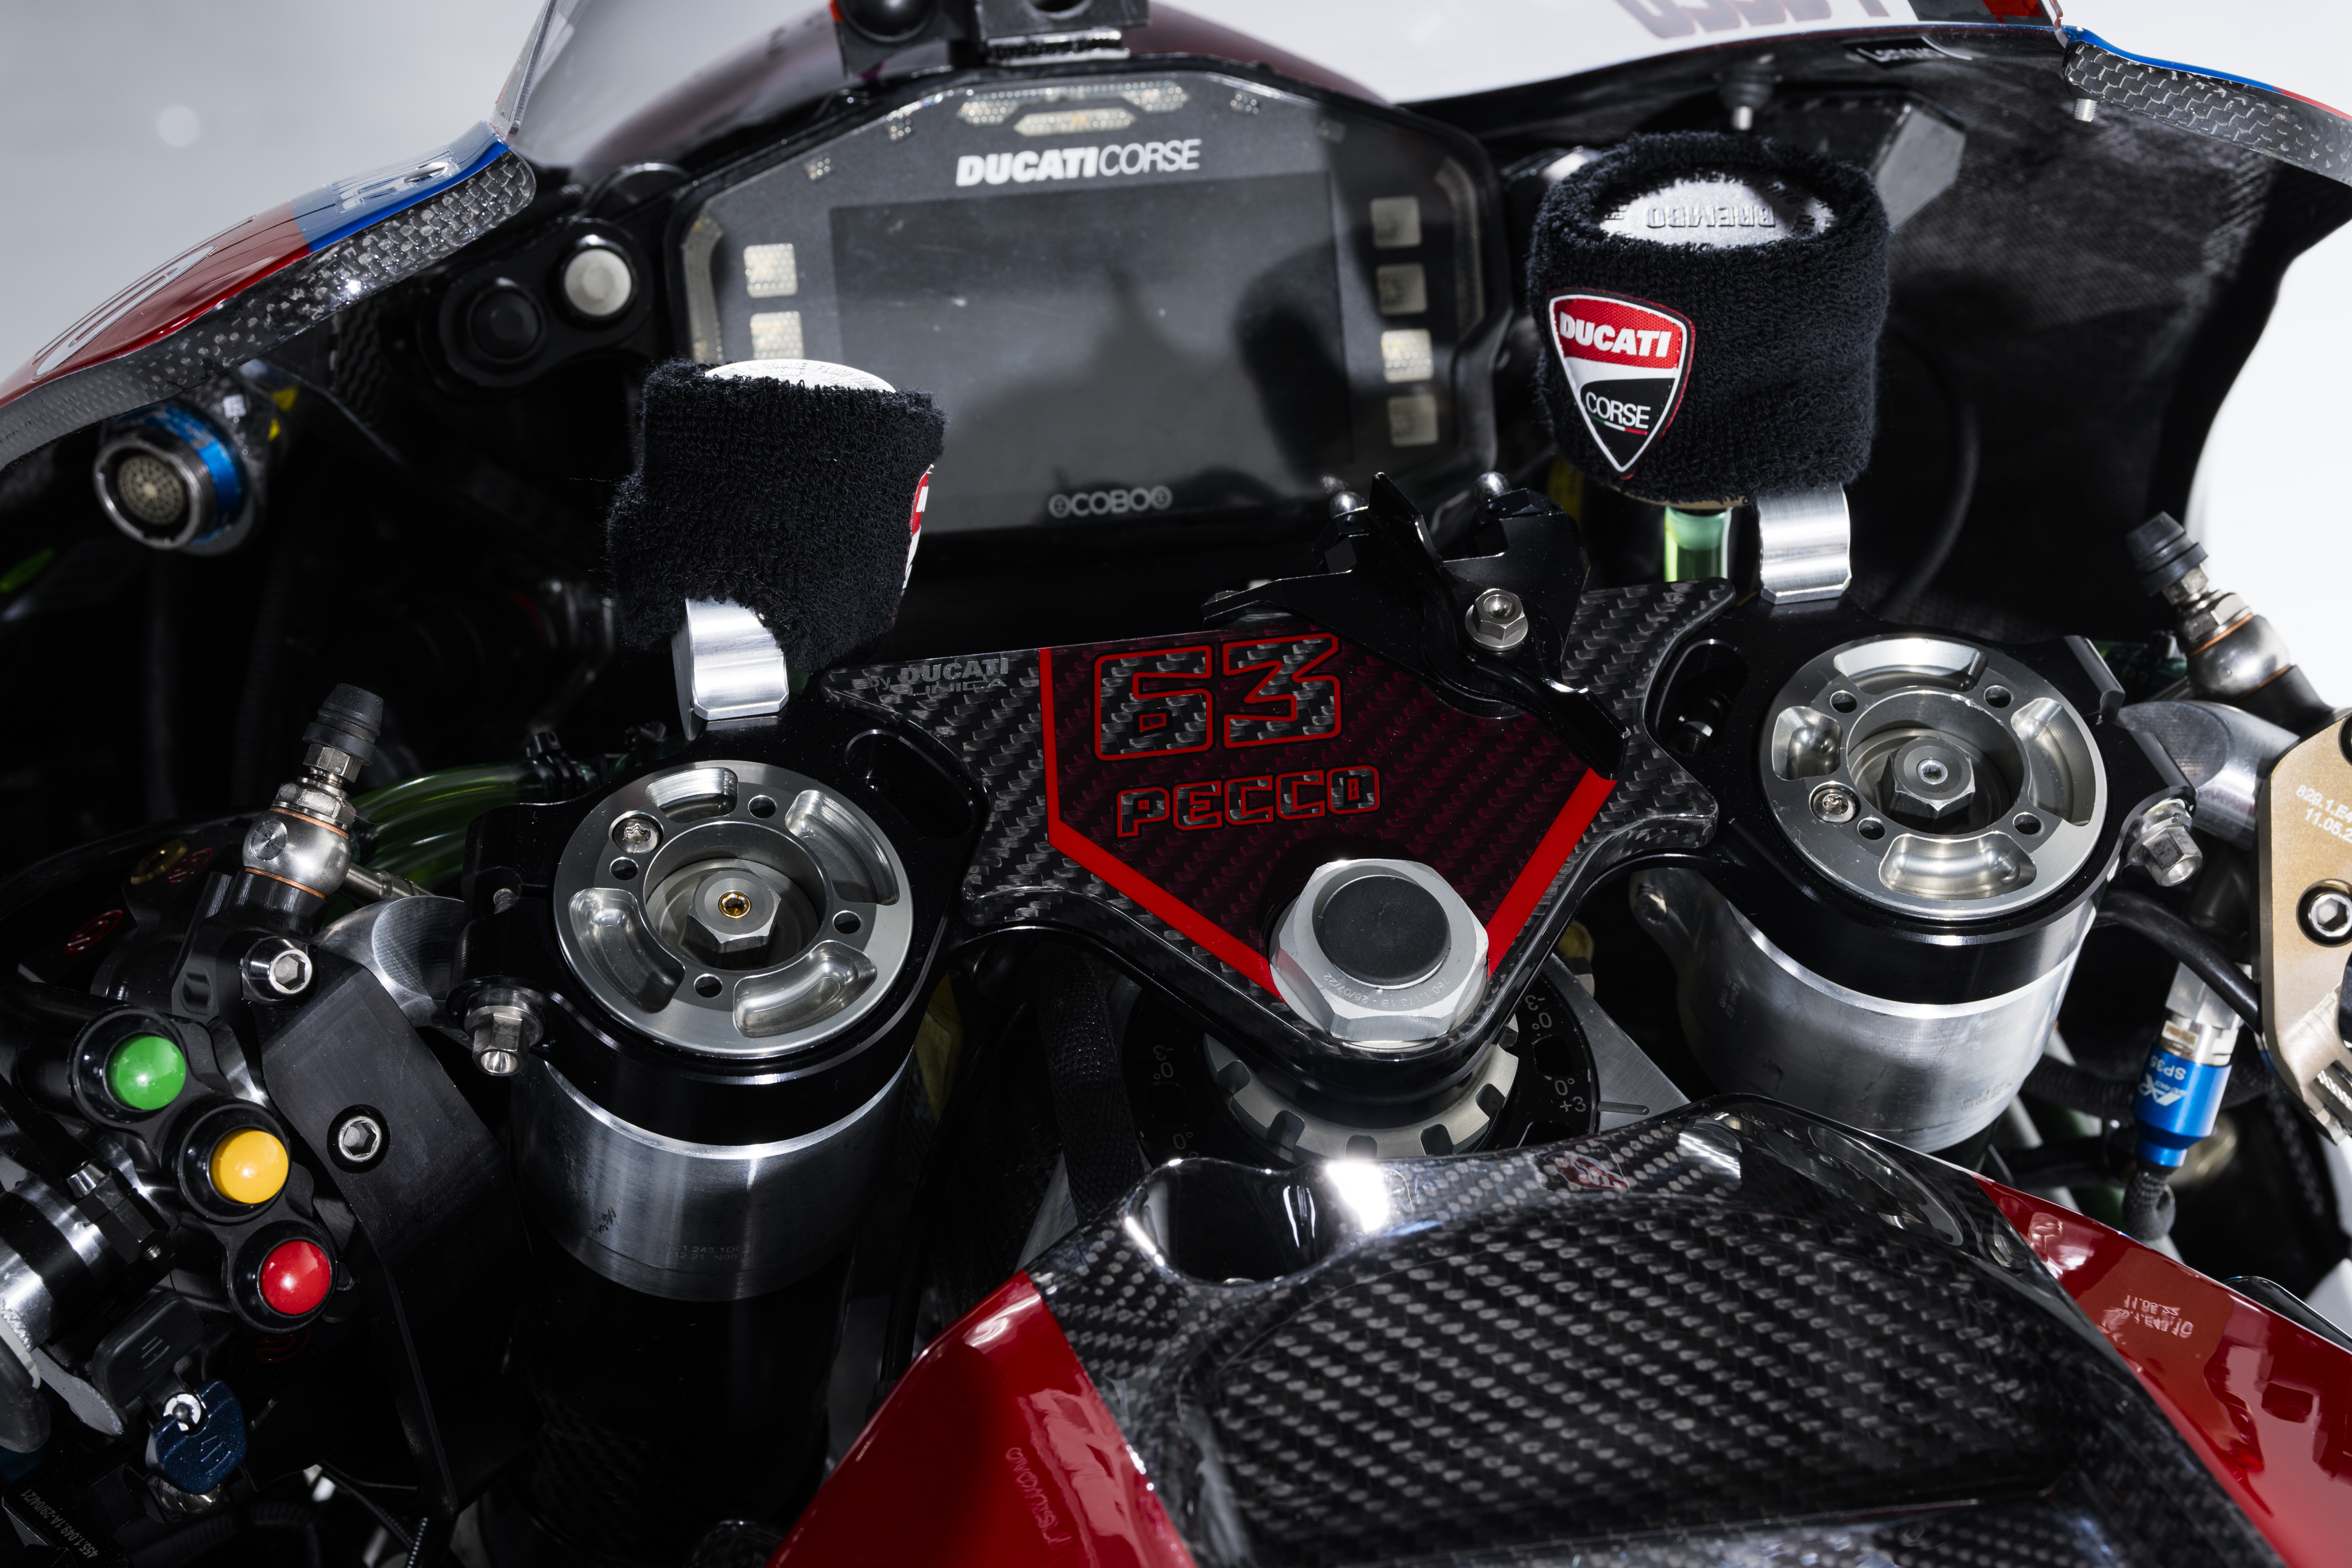 Ducati dash and handlebar controls